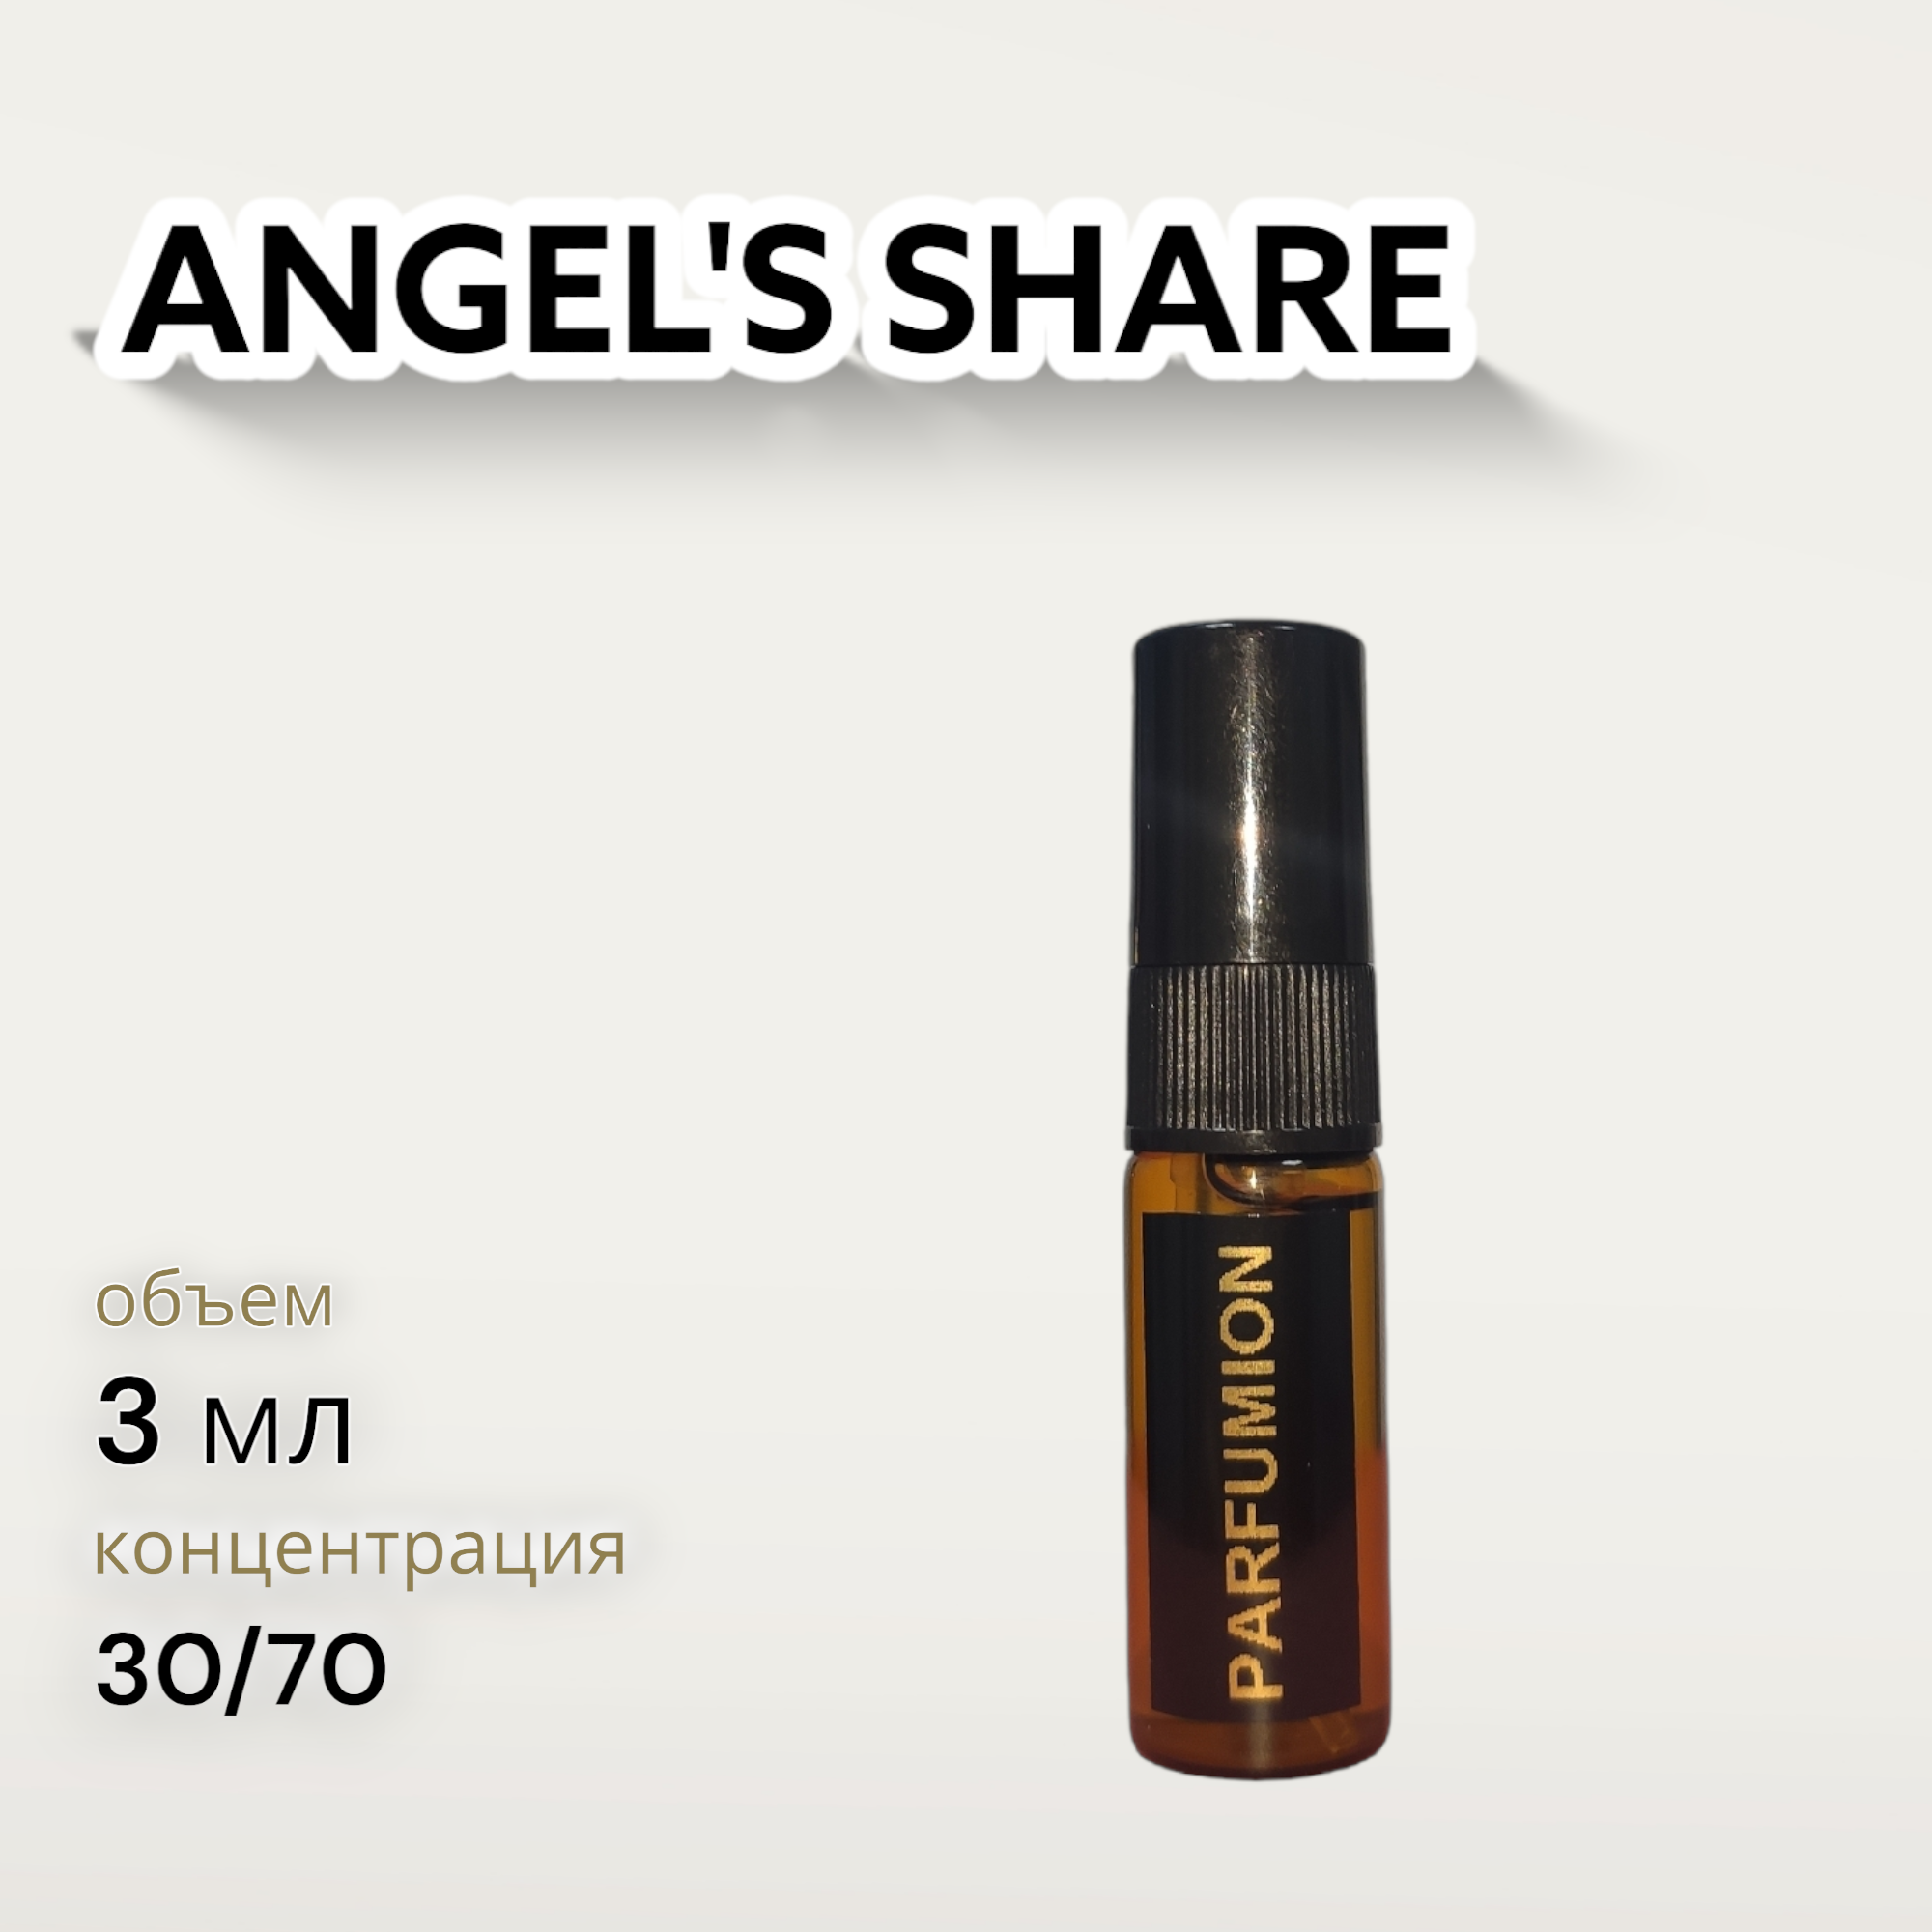 Духи "Angel's Share" от Parfumion